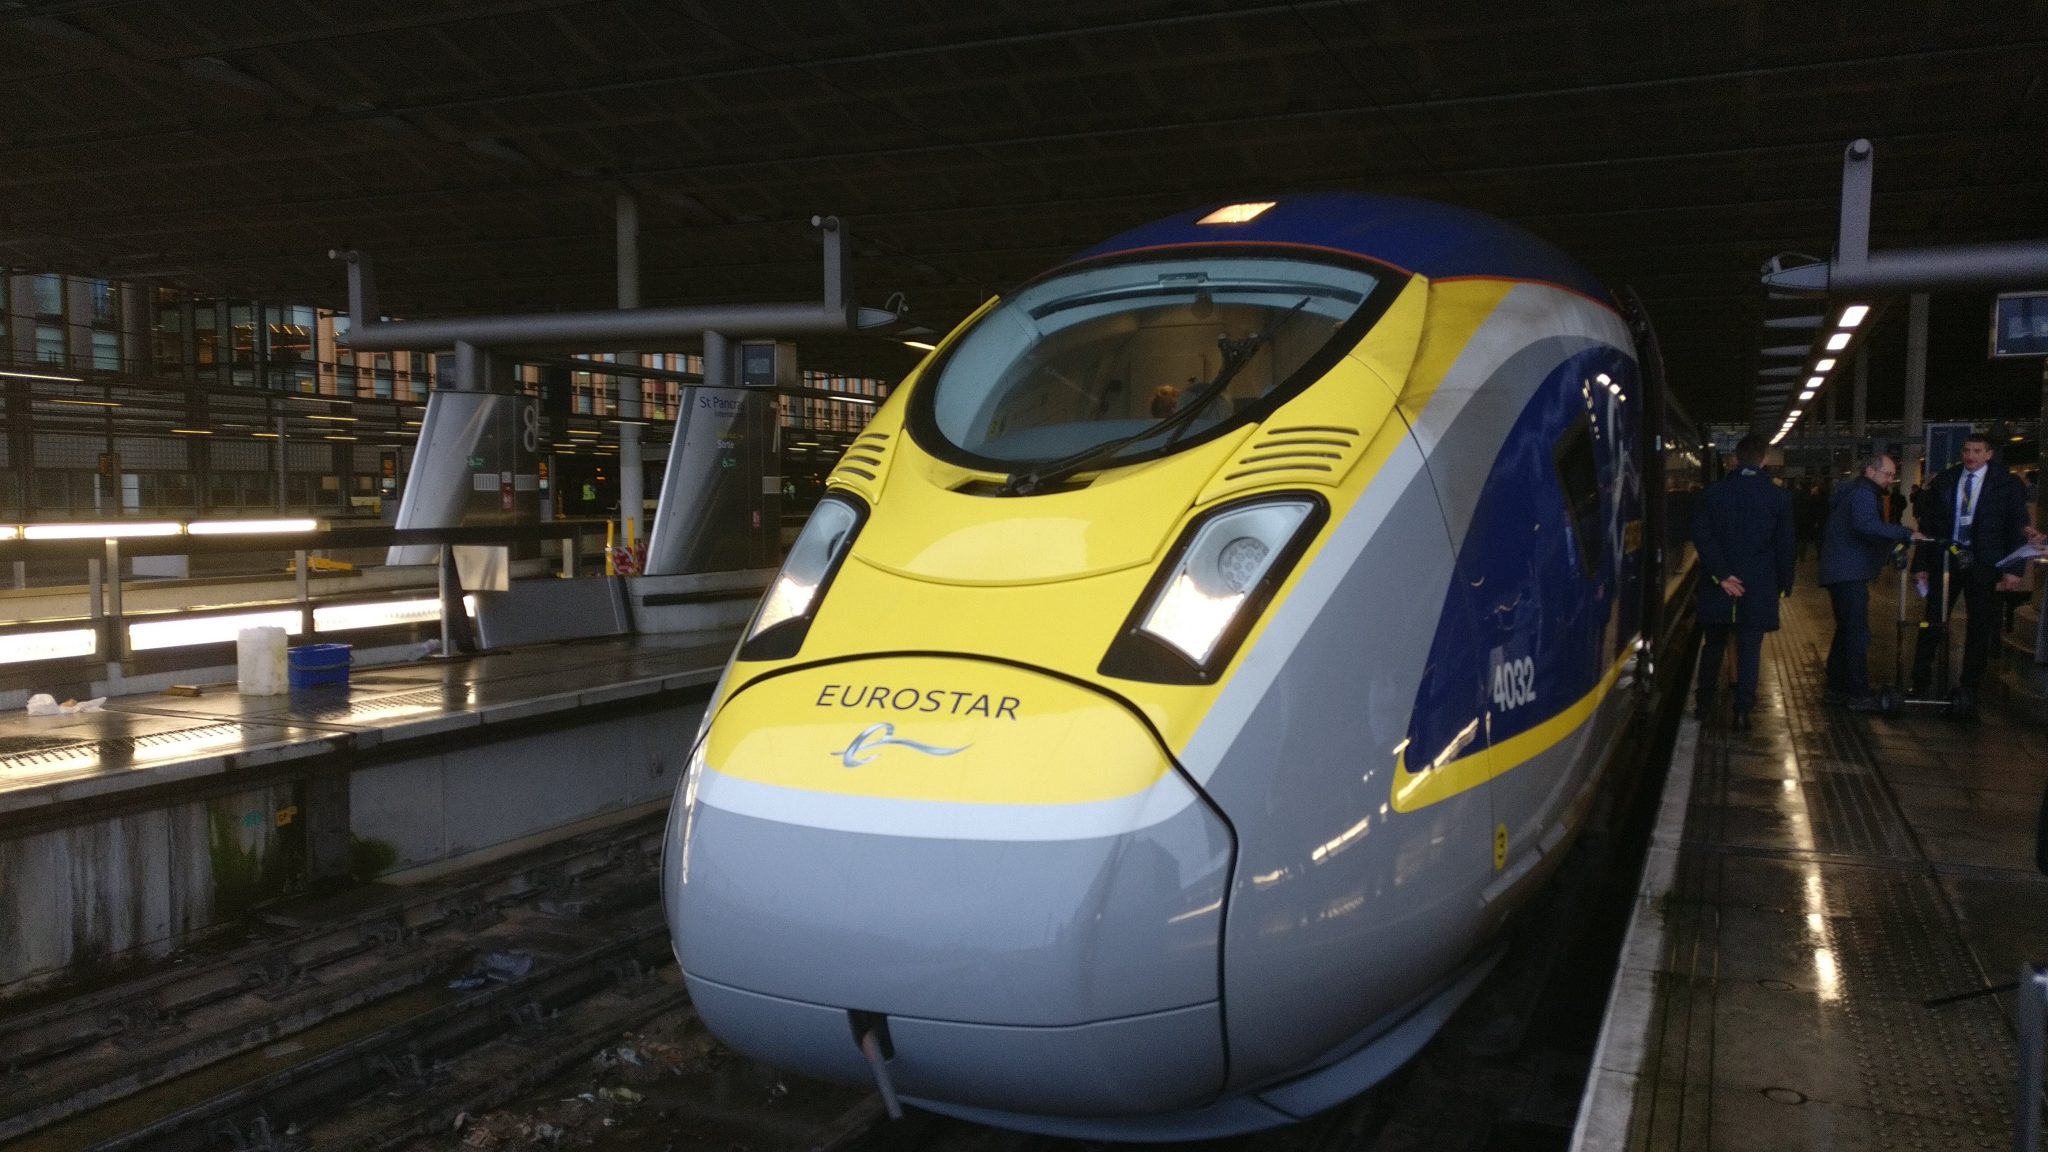 De 400 meter lange e320-trein biedt plaats aan 900 passagiers.